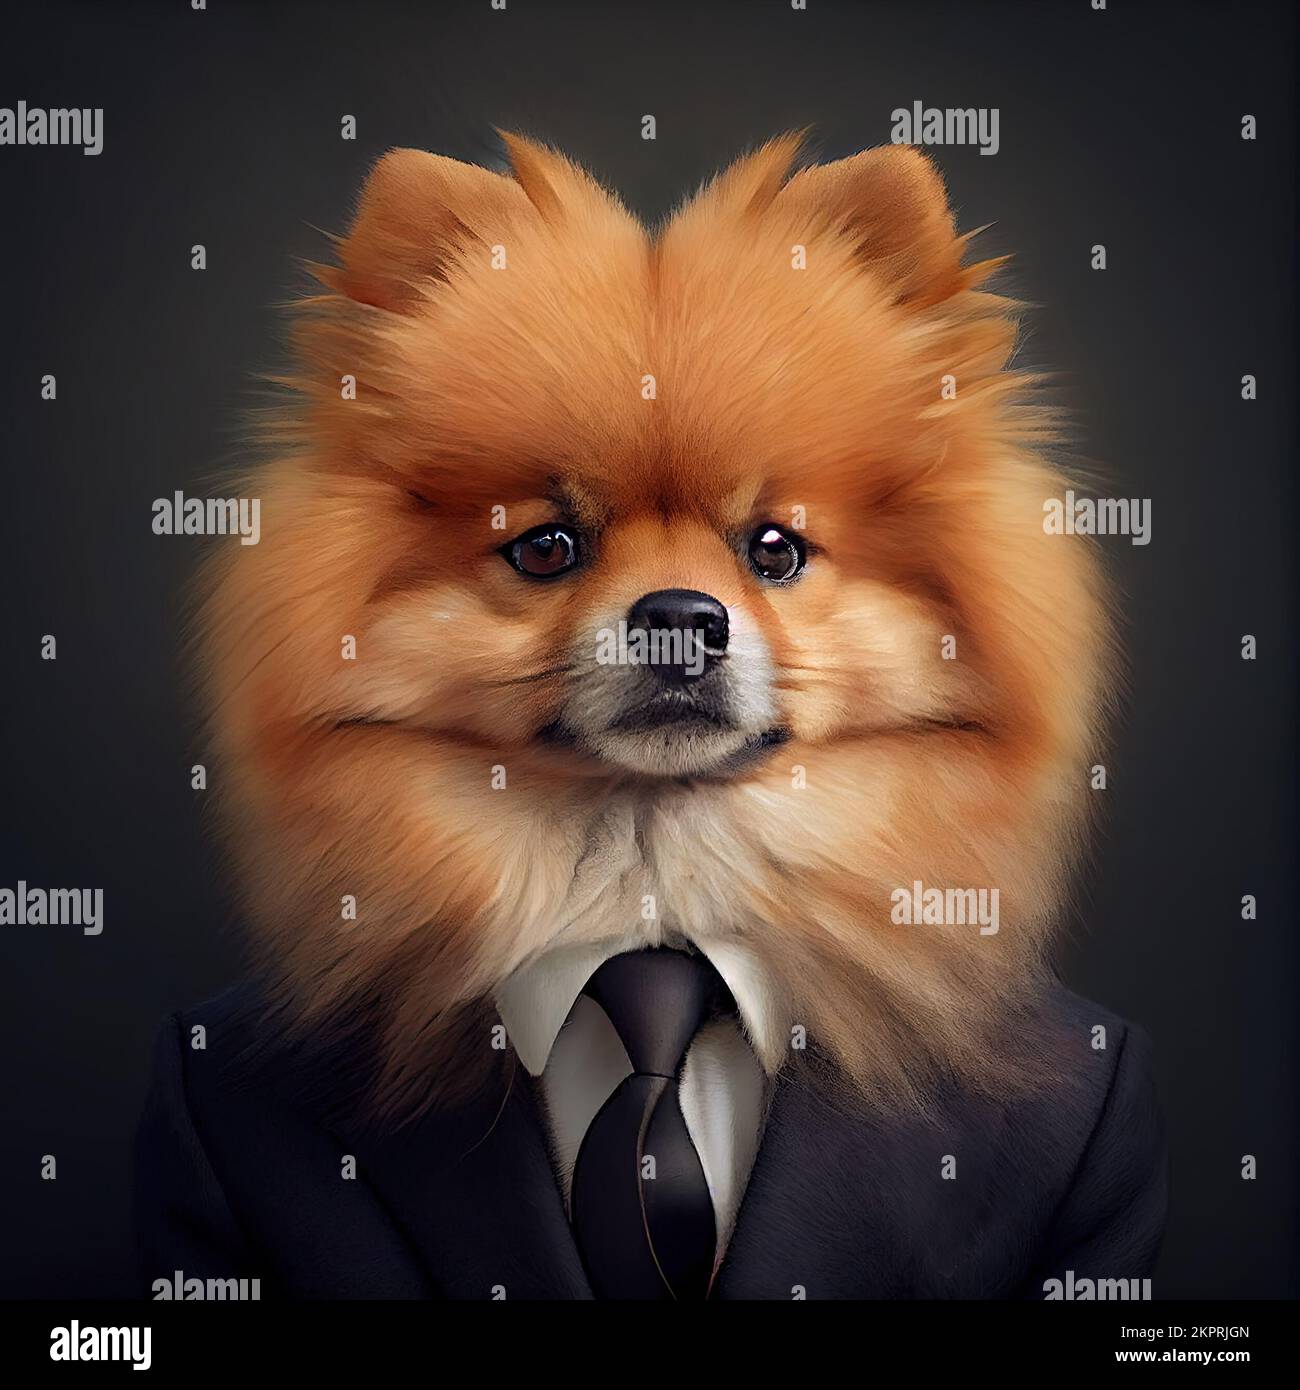 Estudio antropomórfico de un lindo perro Pomeranian en un traje. Ilustración generada digitalmente. Foto de stock